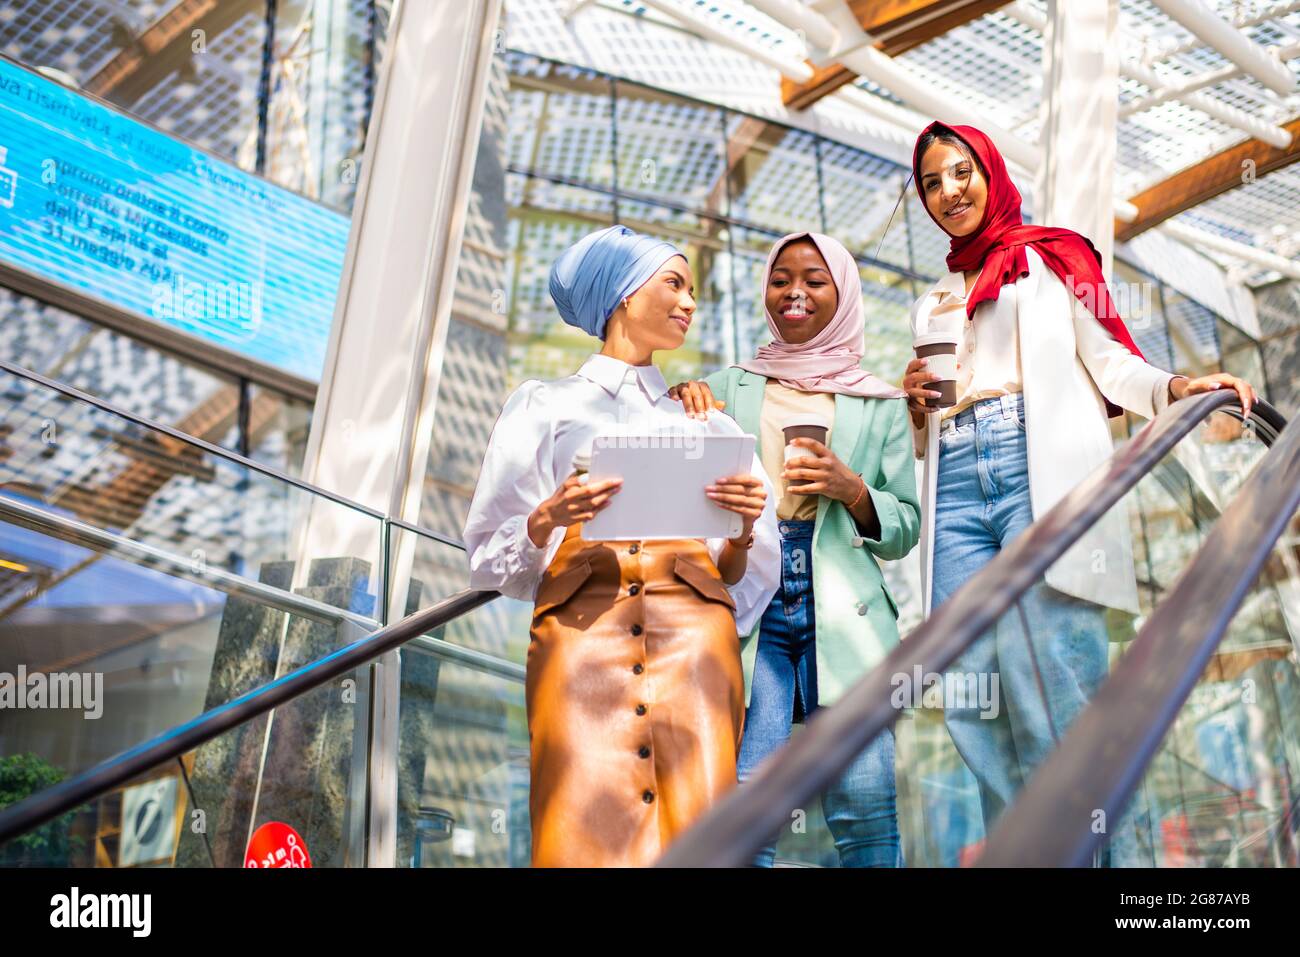 Gruppo multietnico di ragazze musulmane che indossano abiti casual e tradizionali hijab bonding e divertirsi all'aperto - 3 ragazze arabe Foto Stock